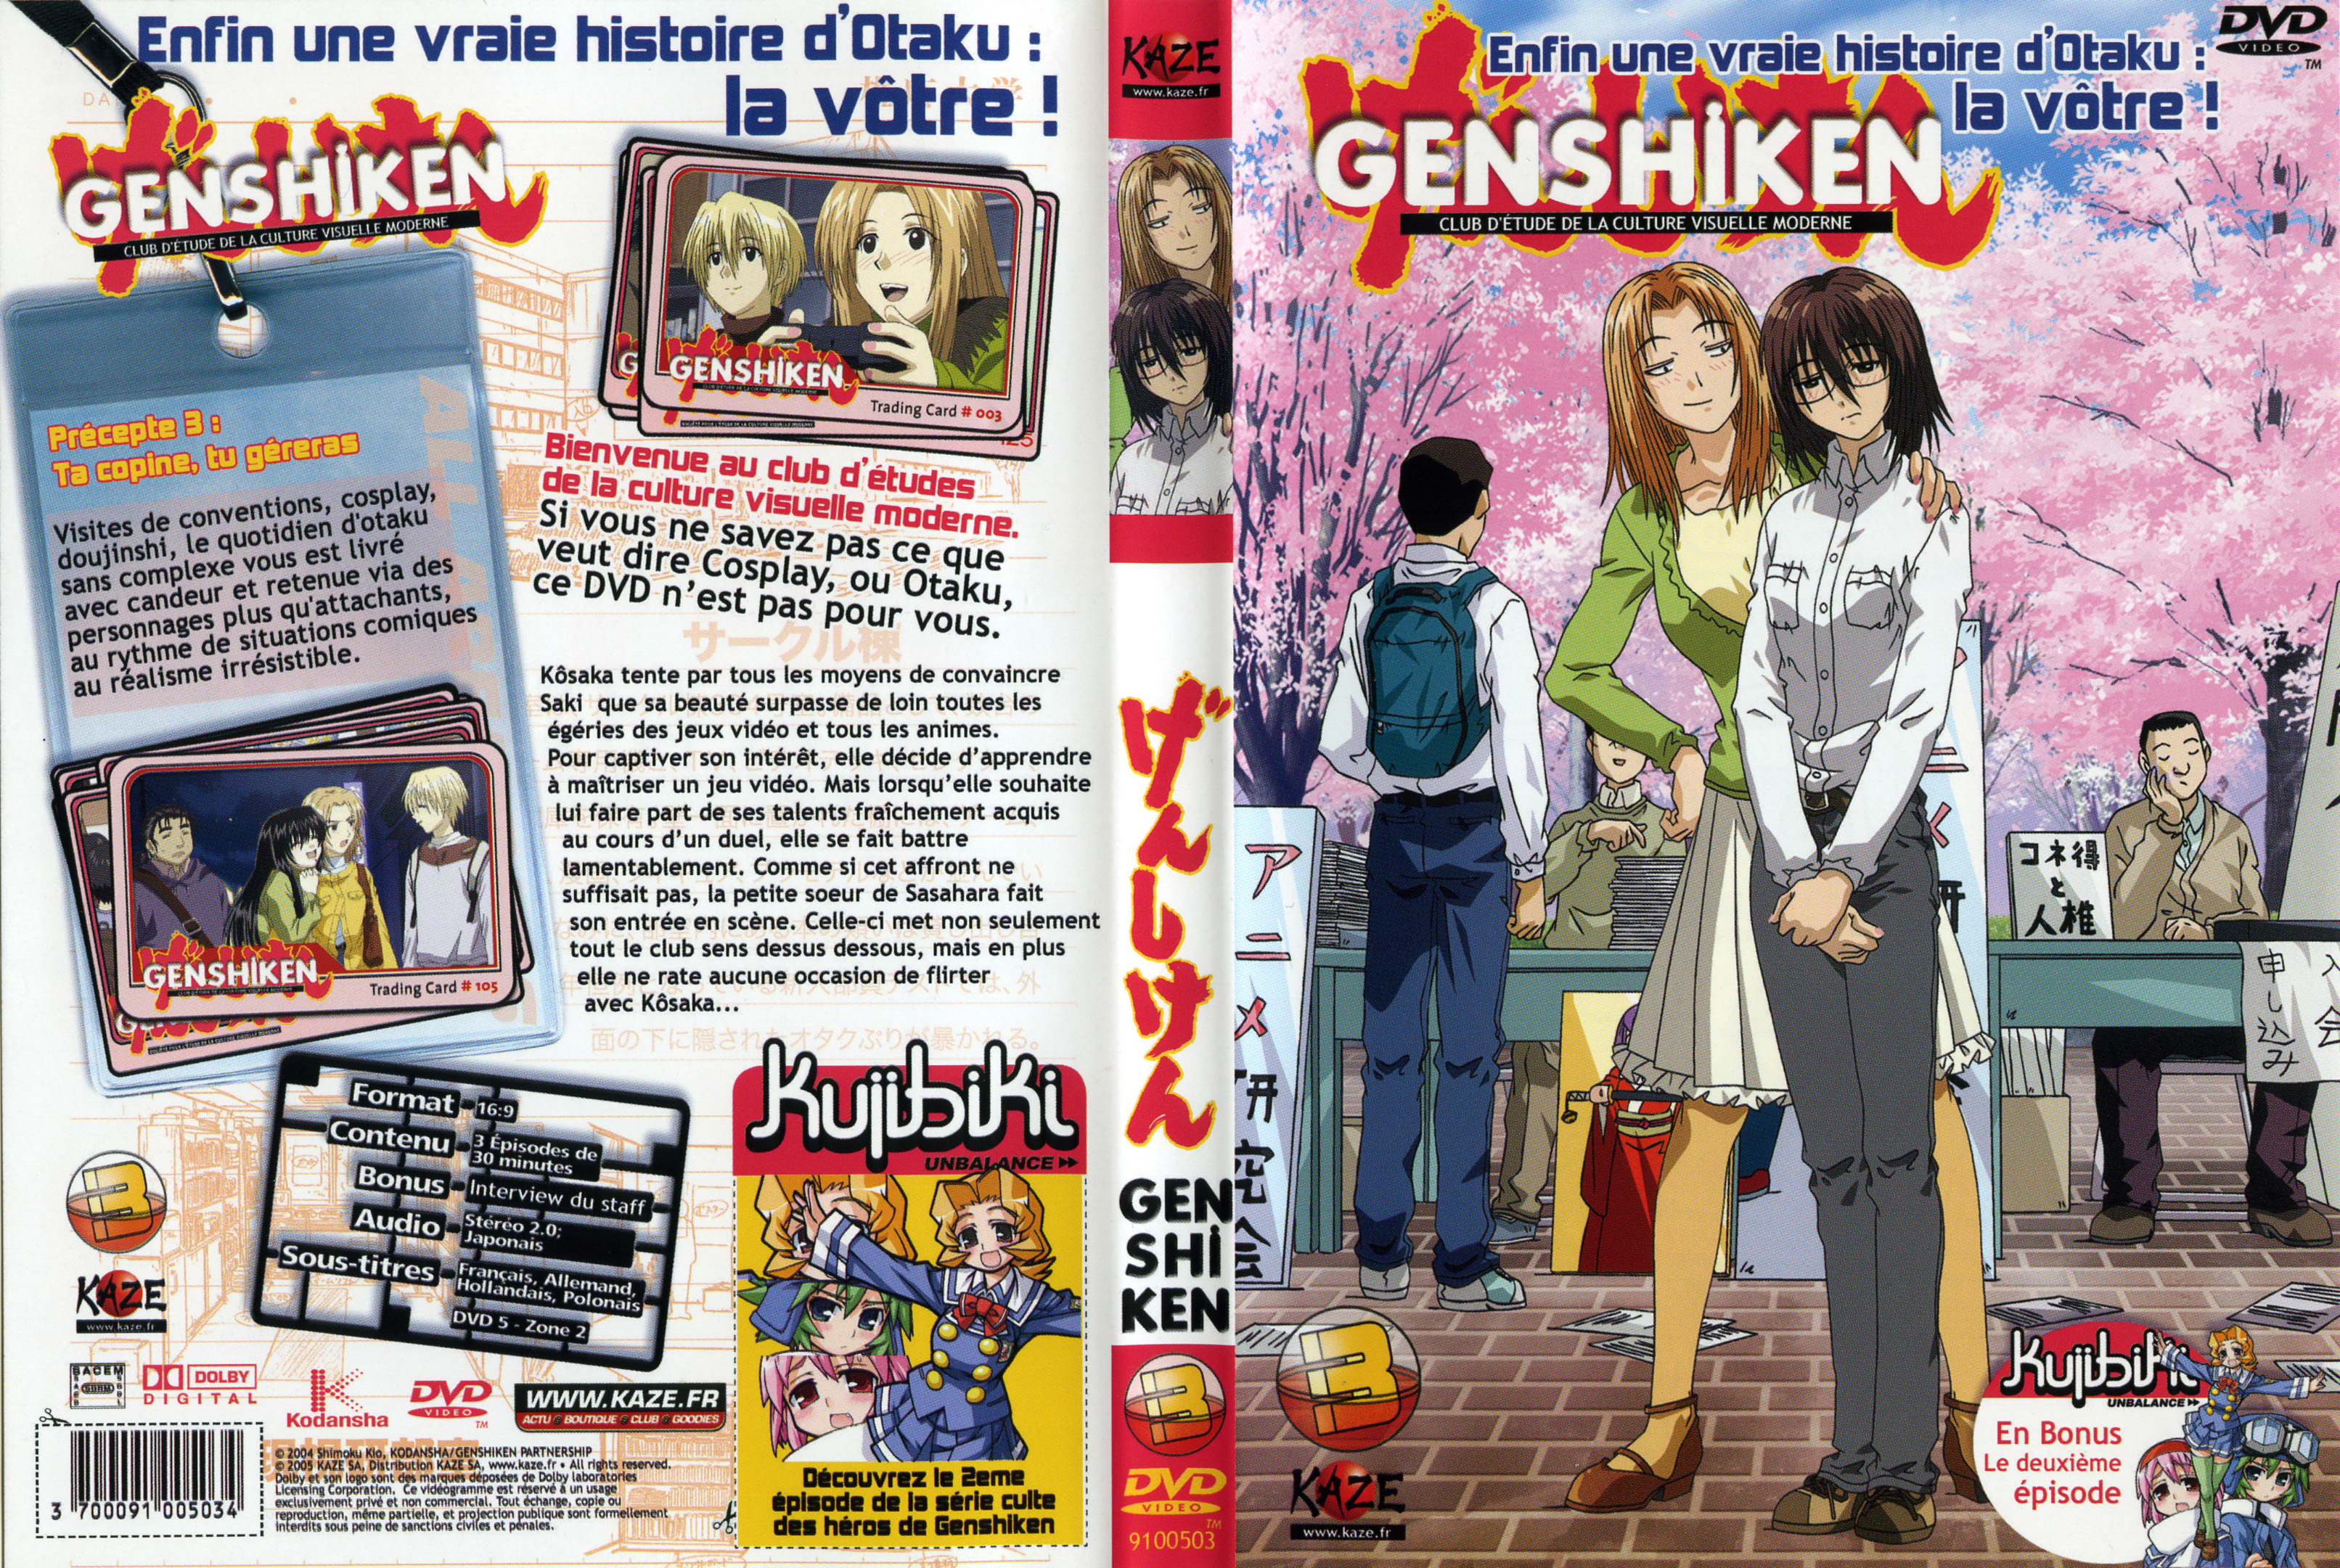 Jaquette DVD Genshiken vol 03